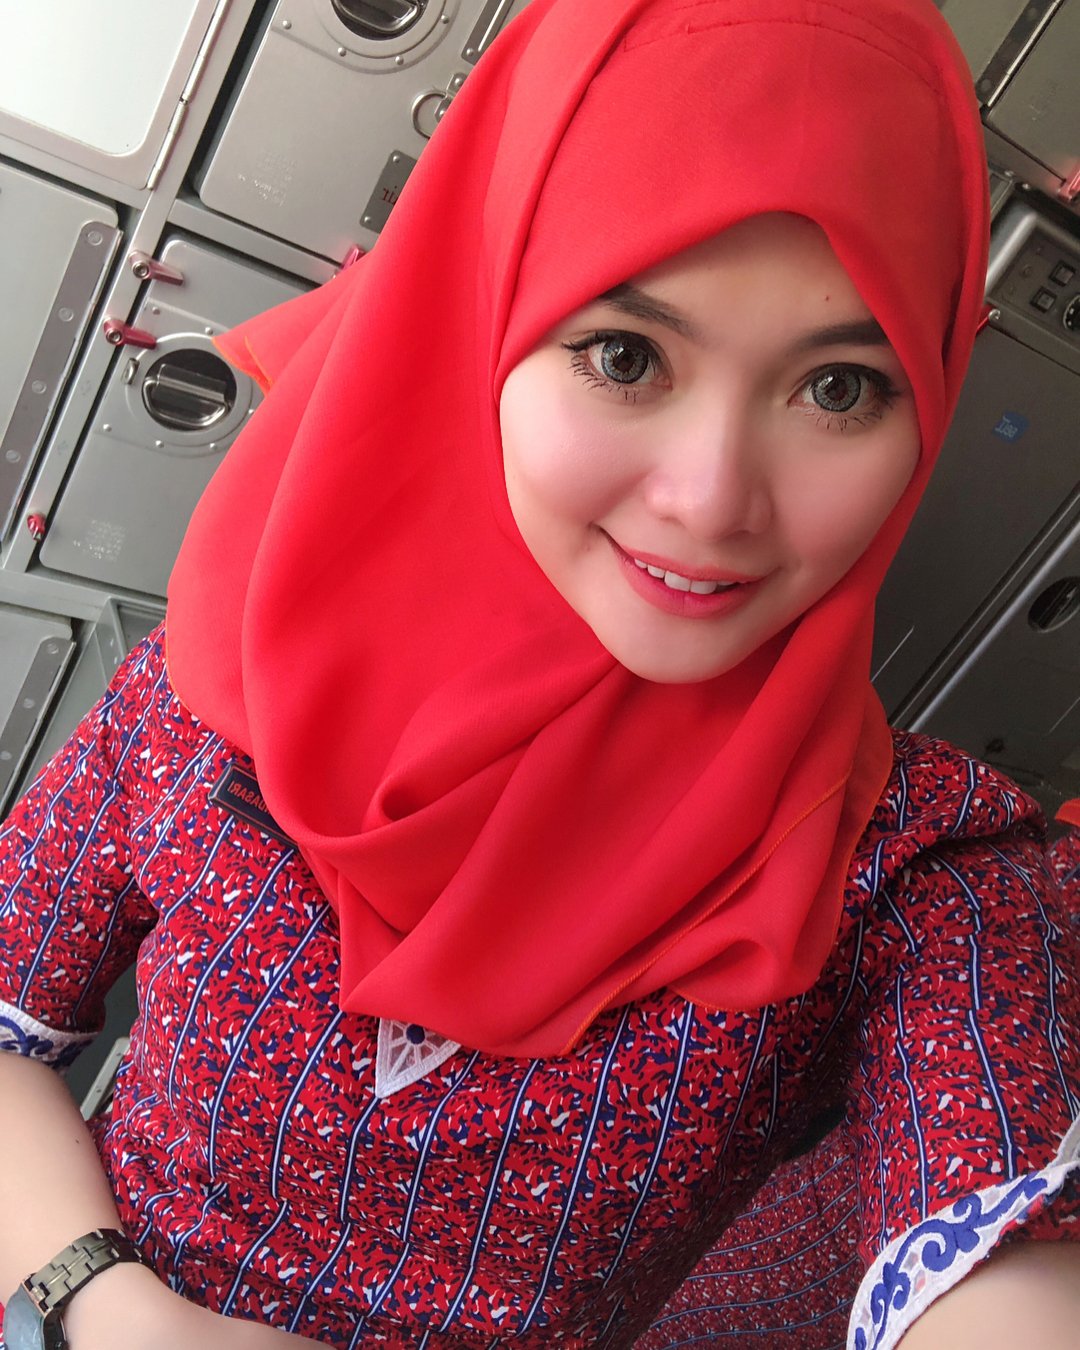 Bokep jilbab cantik. Jilbab Hyper. Malaysia jilboobs. Jilboobs Perawat. Jilboobs 2019.